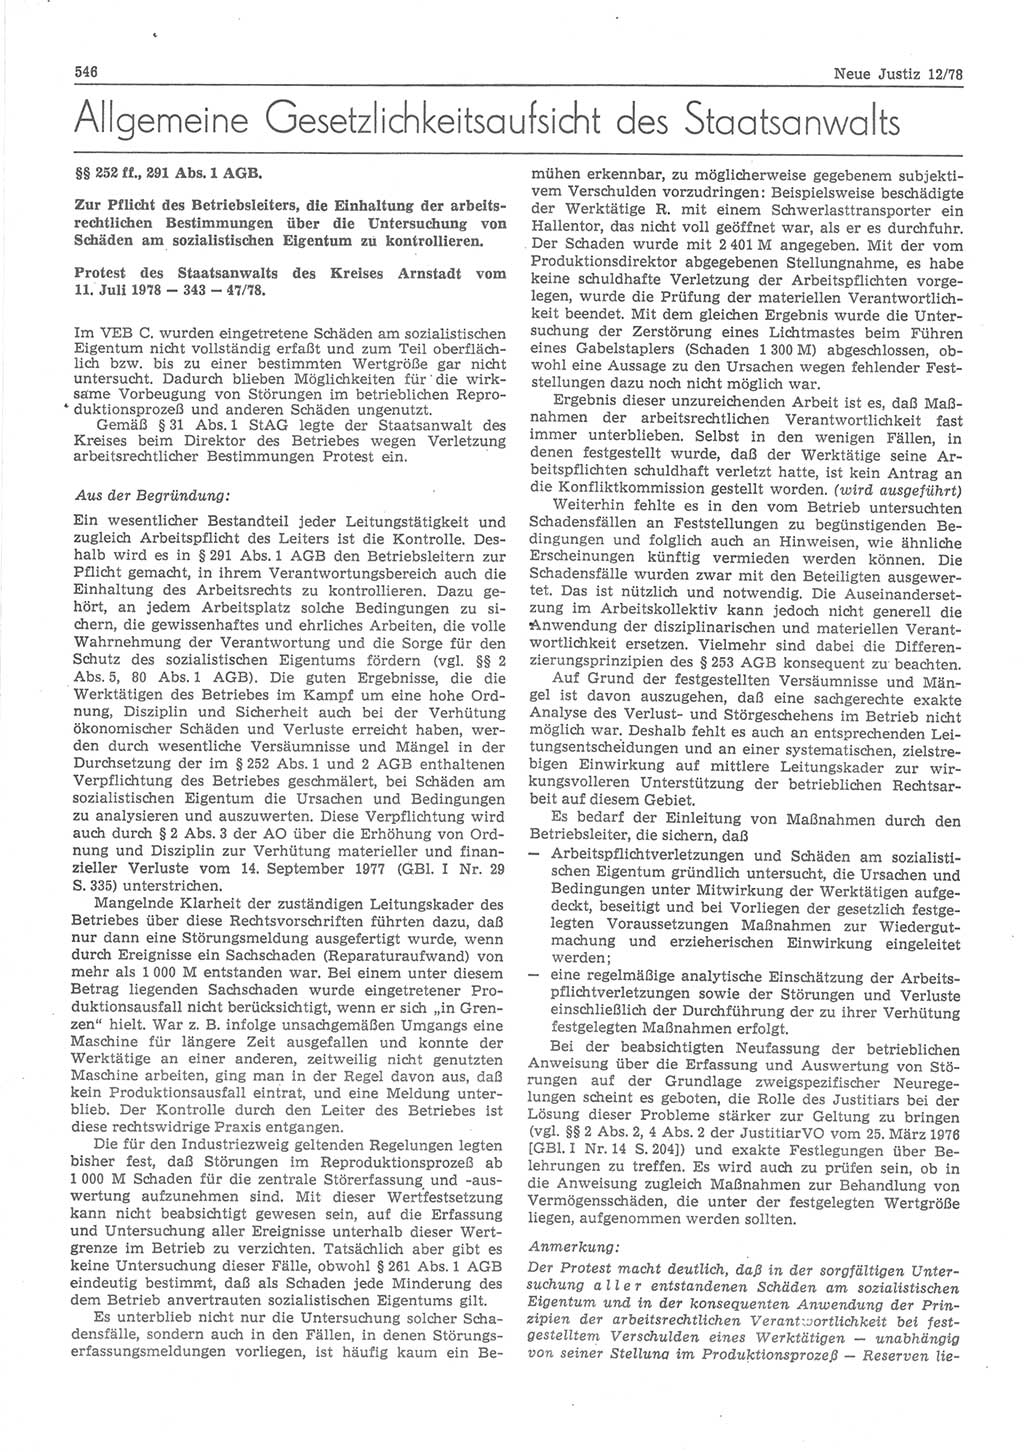 Neue Justiz (NJ), Zeitschrift für sozialistisches Recht und Gesetzlichkeit [Deutsche Demokratische Republik (DDR)], 32. Jahrgang 1978, Seite 546 (NJ DDR 1978, S. 546)